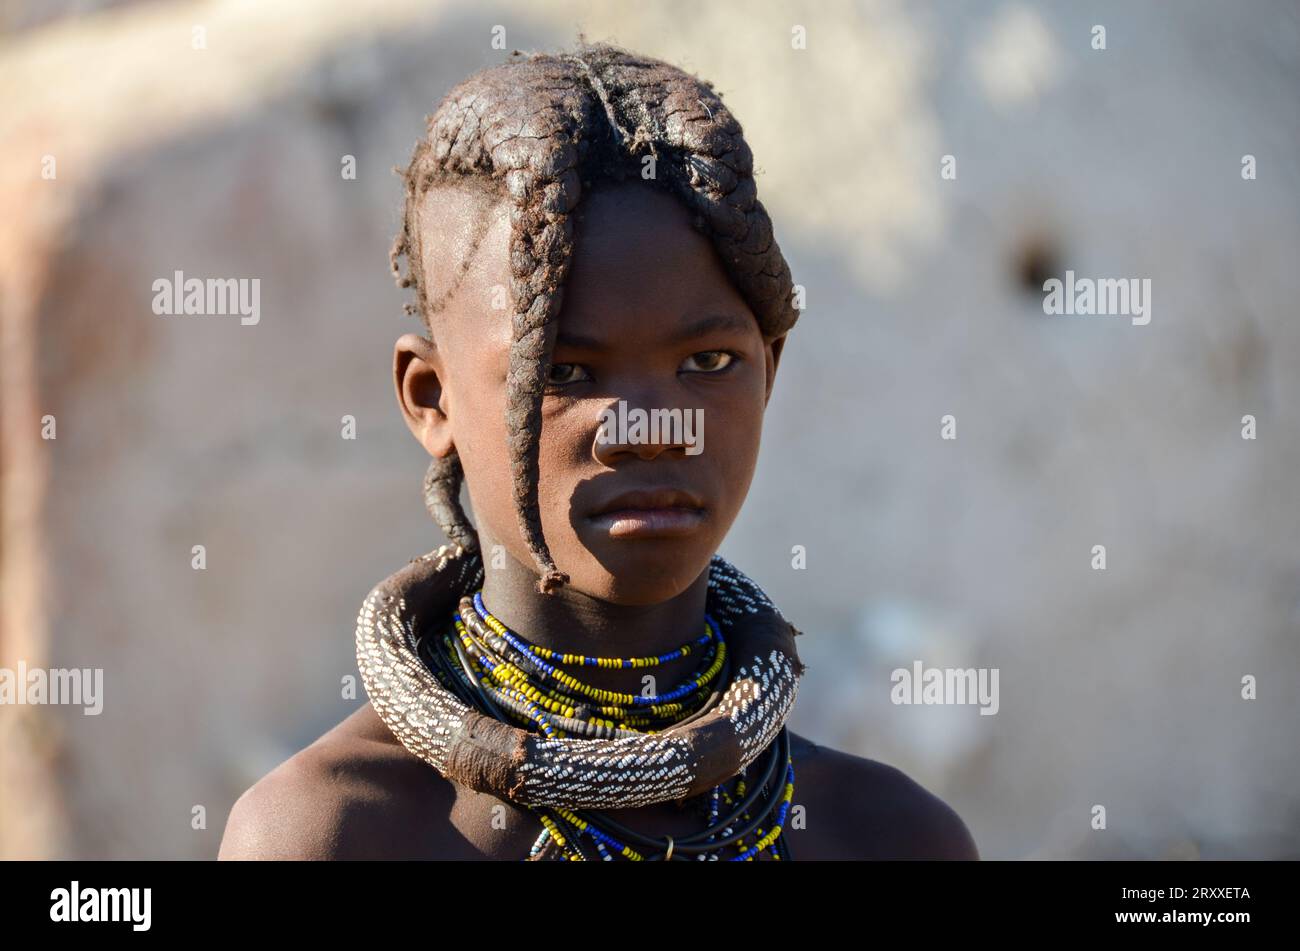 himba portrait Stock Photo